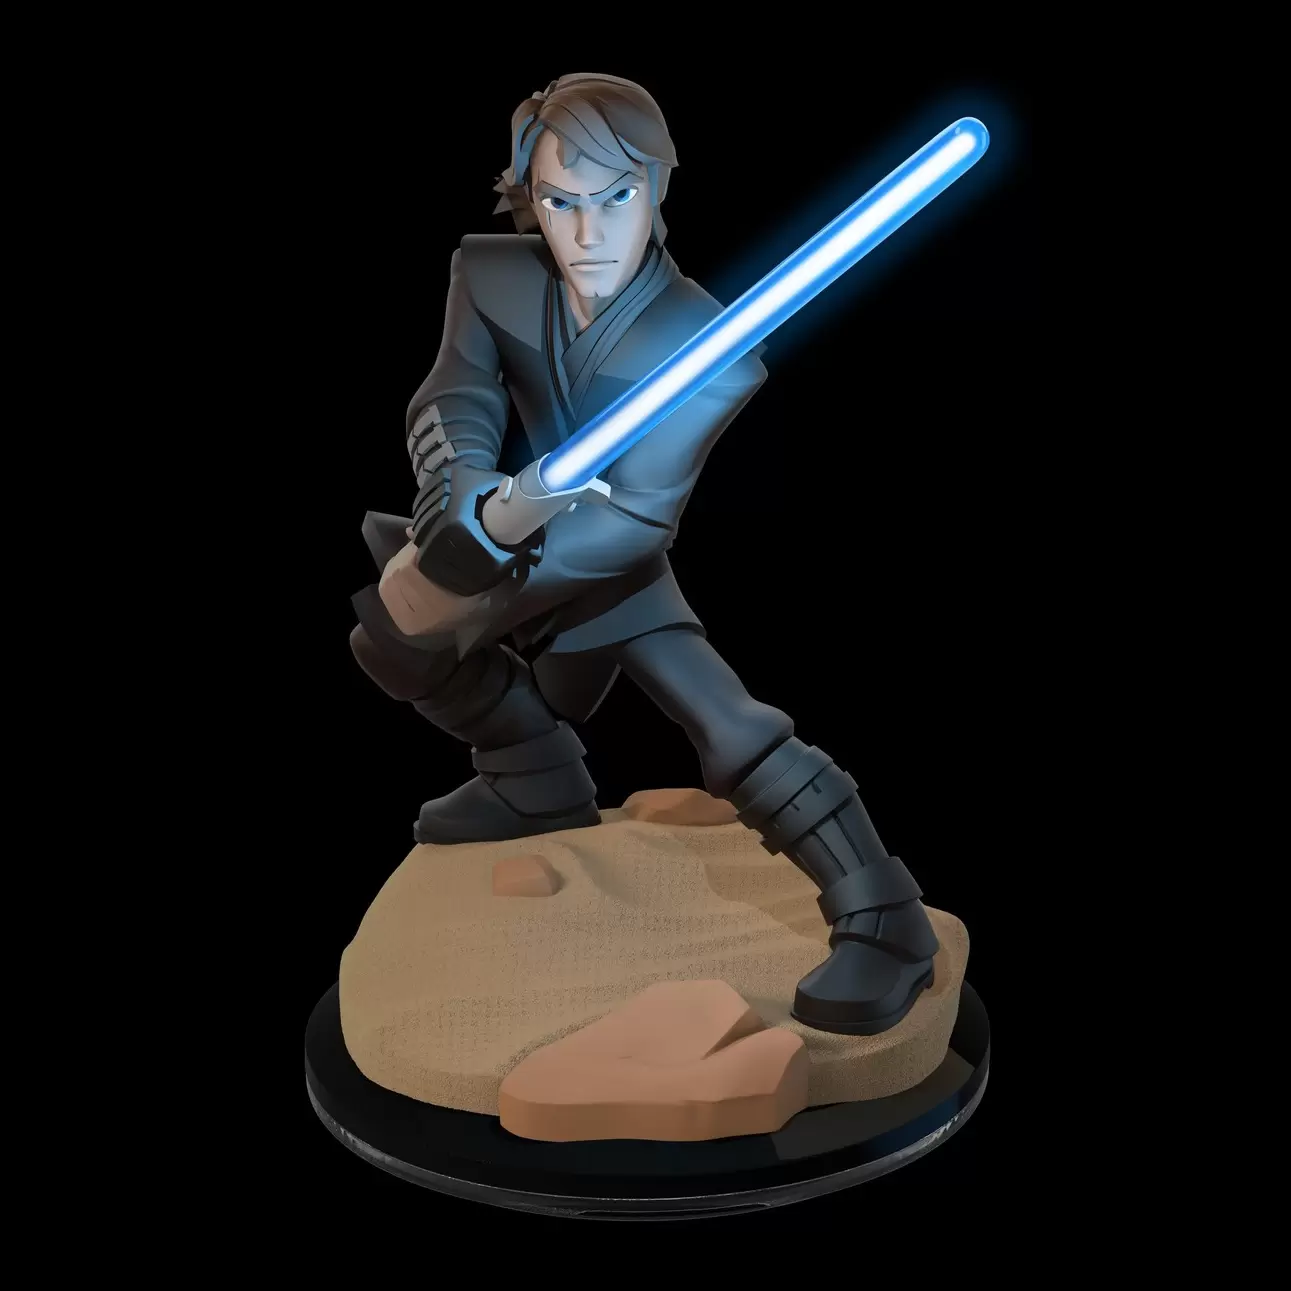 Disney Infinity Action figures - Light FX Anakin Skywalker